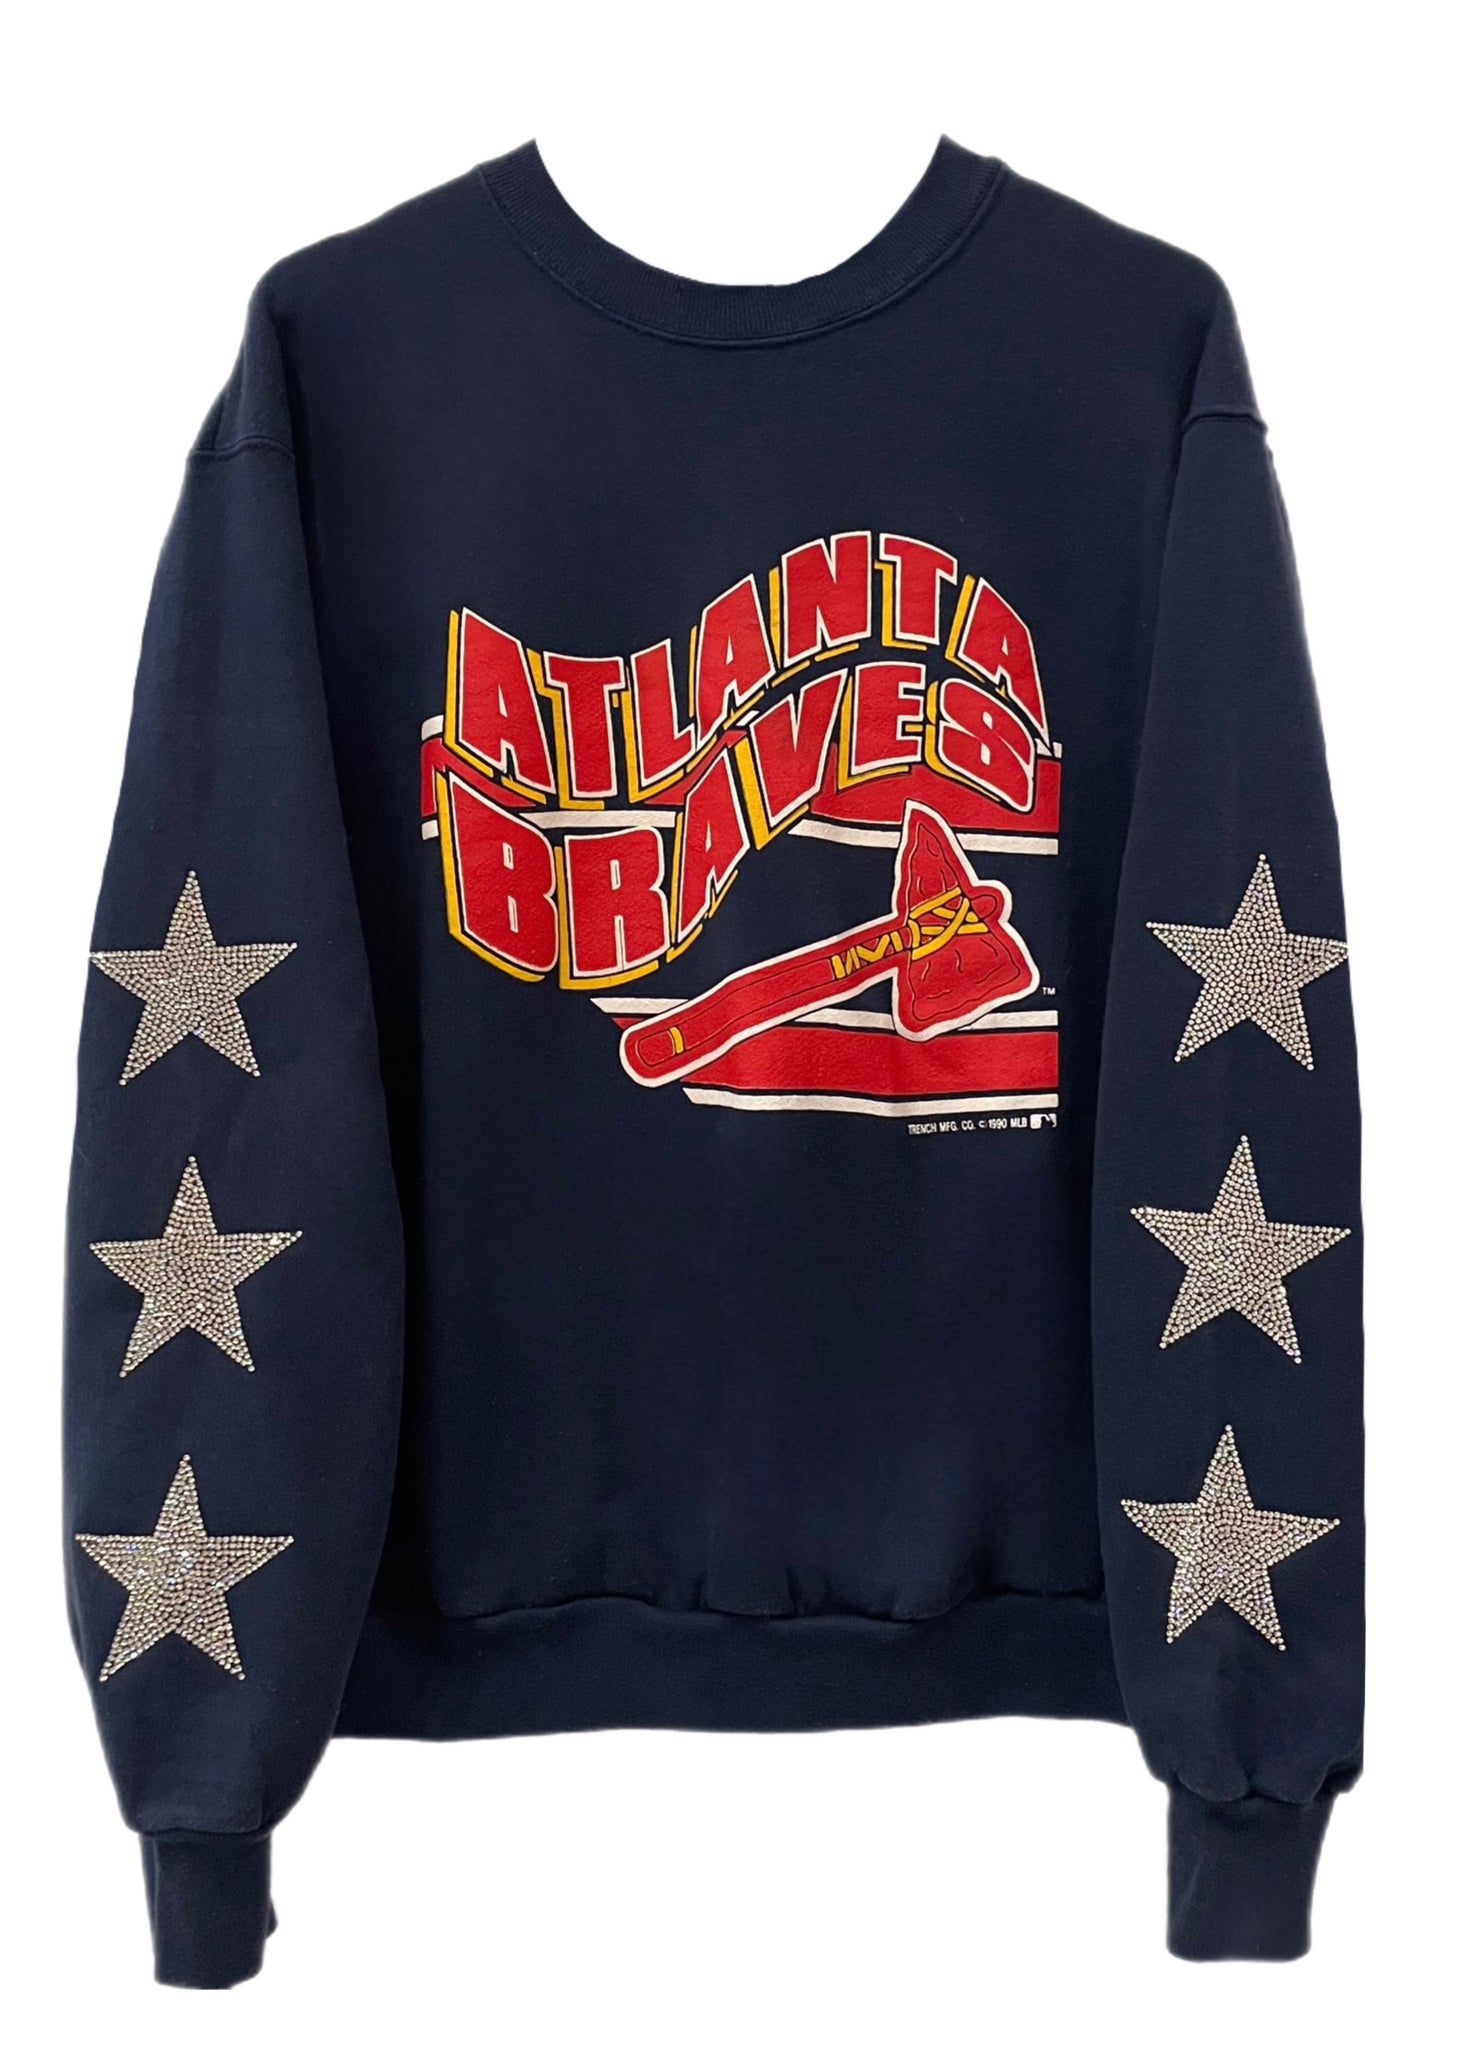 Atlanta Braves, MLB One of a KIND Vintage Sweatshirt with Three